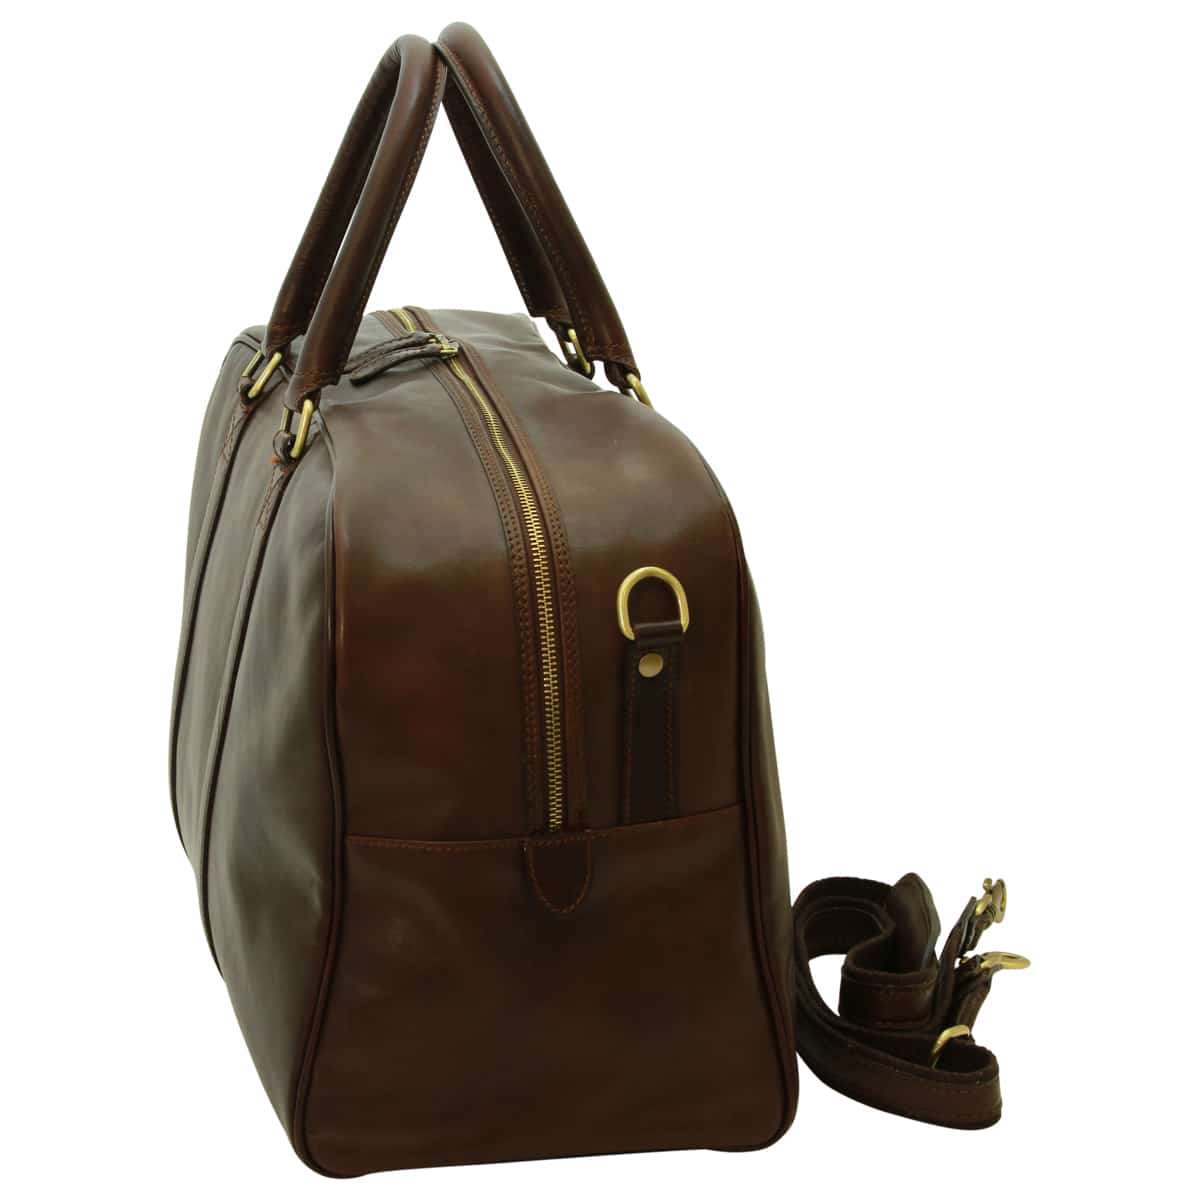 Soft Calfskin Leather Travel Bag - Dark Brown | 030591TM US | Old Angler Firenze